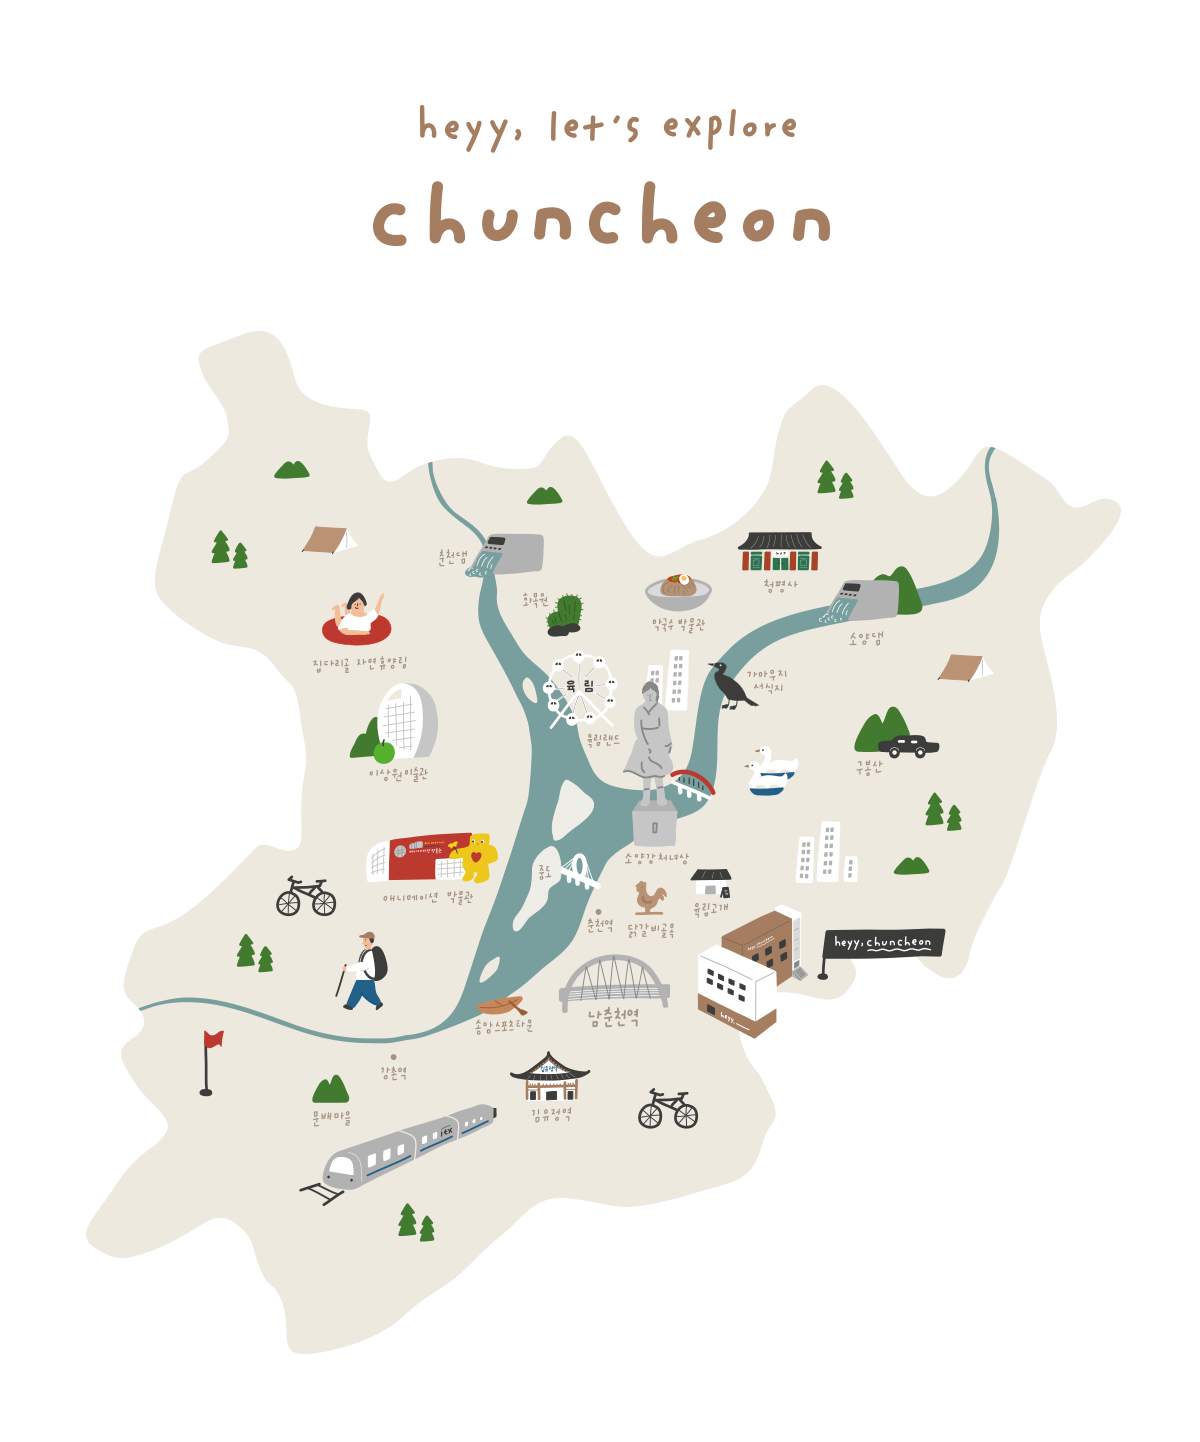 hayy, chuncheon map